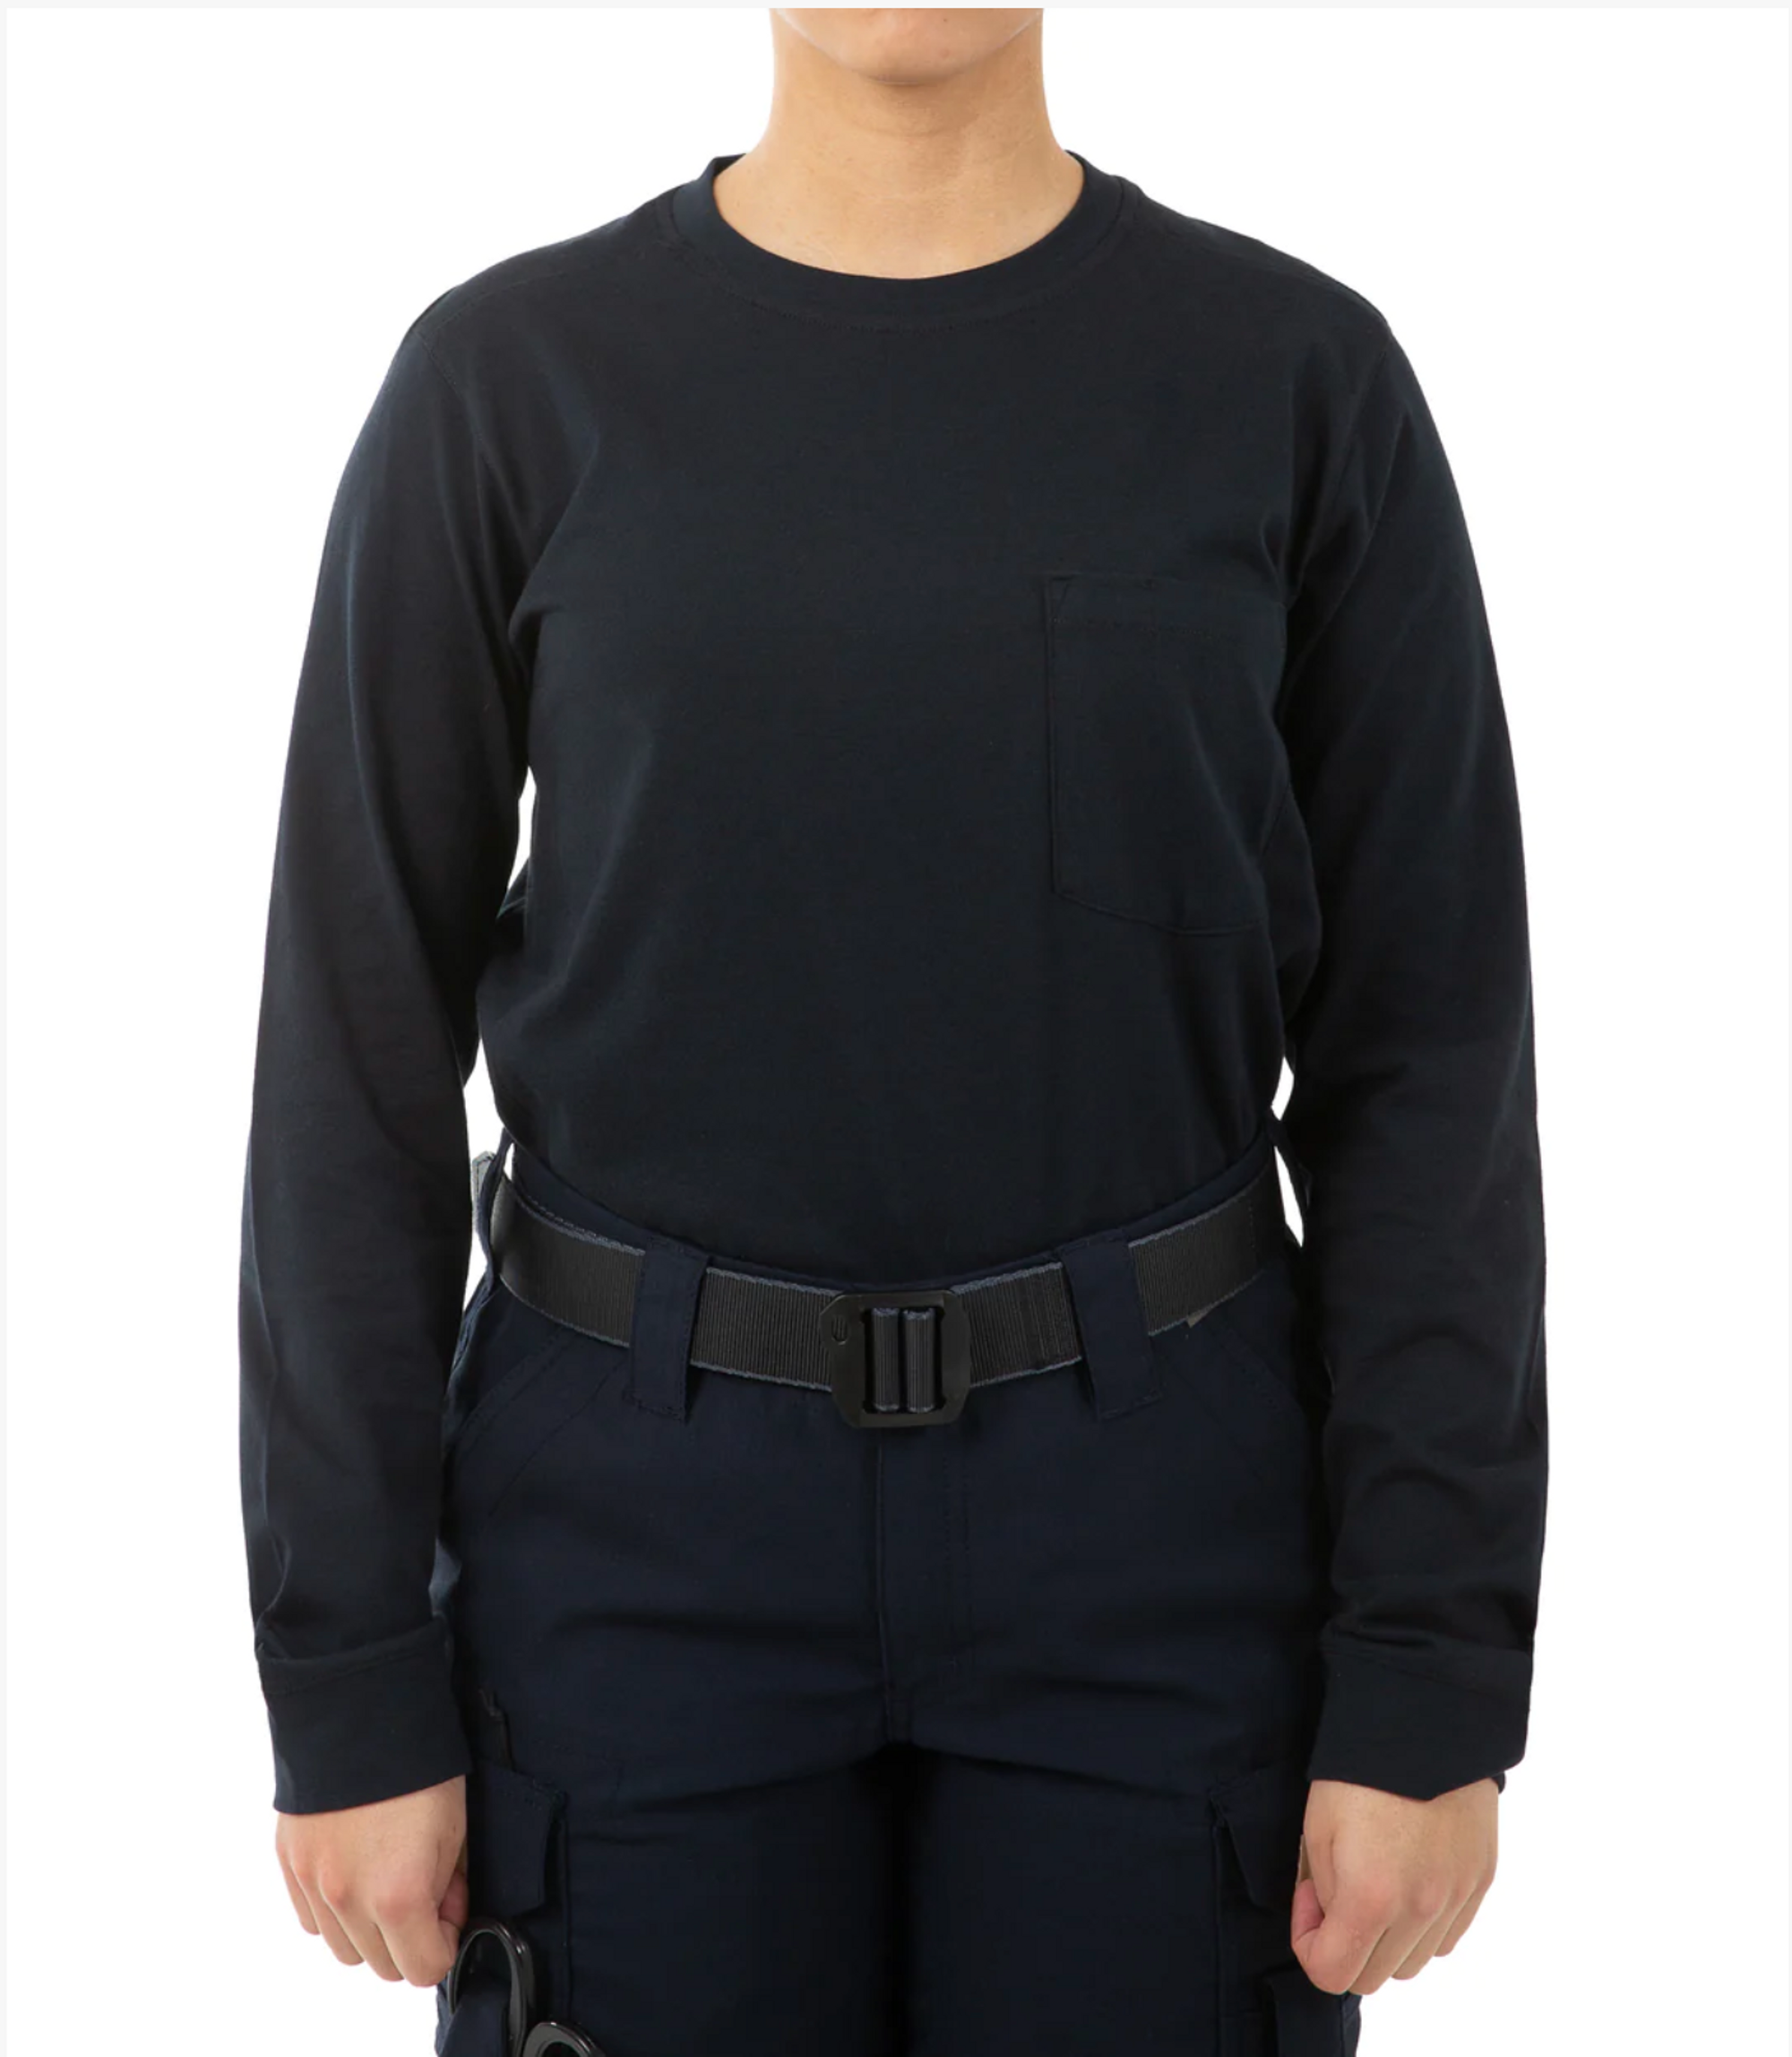 First Tactical Women's Tactix Cotton Long Sleeve Shirt w/Chest Pocket